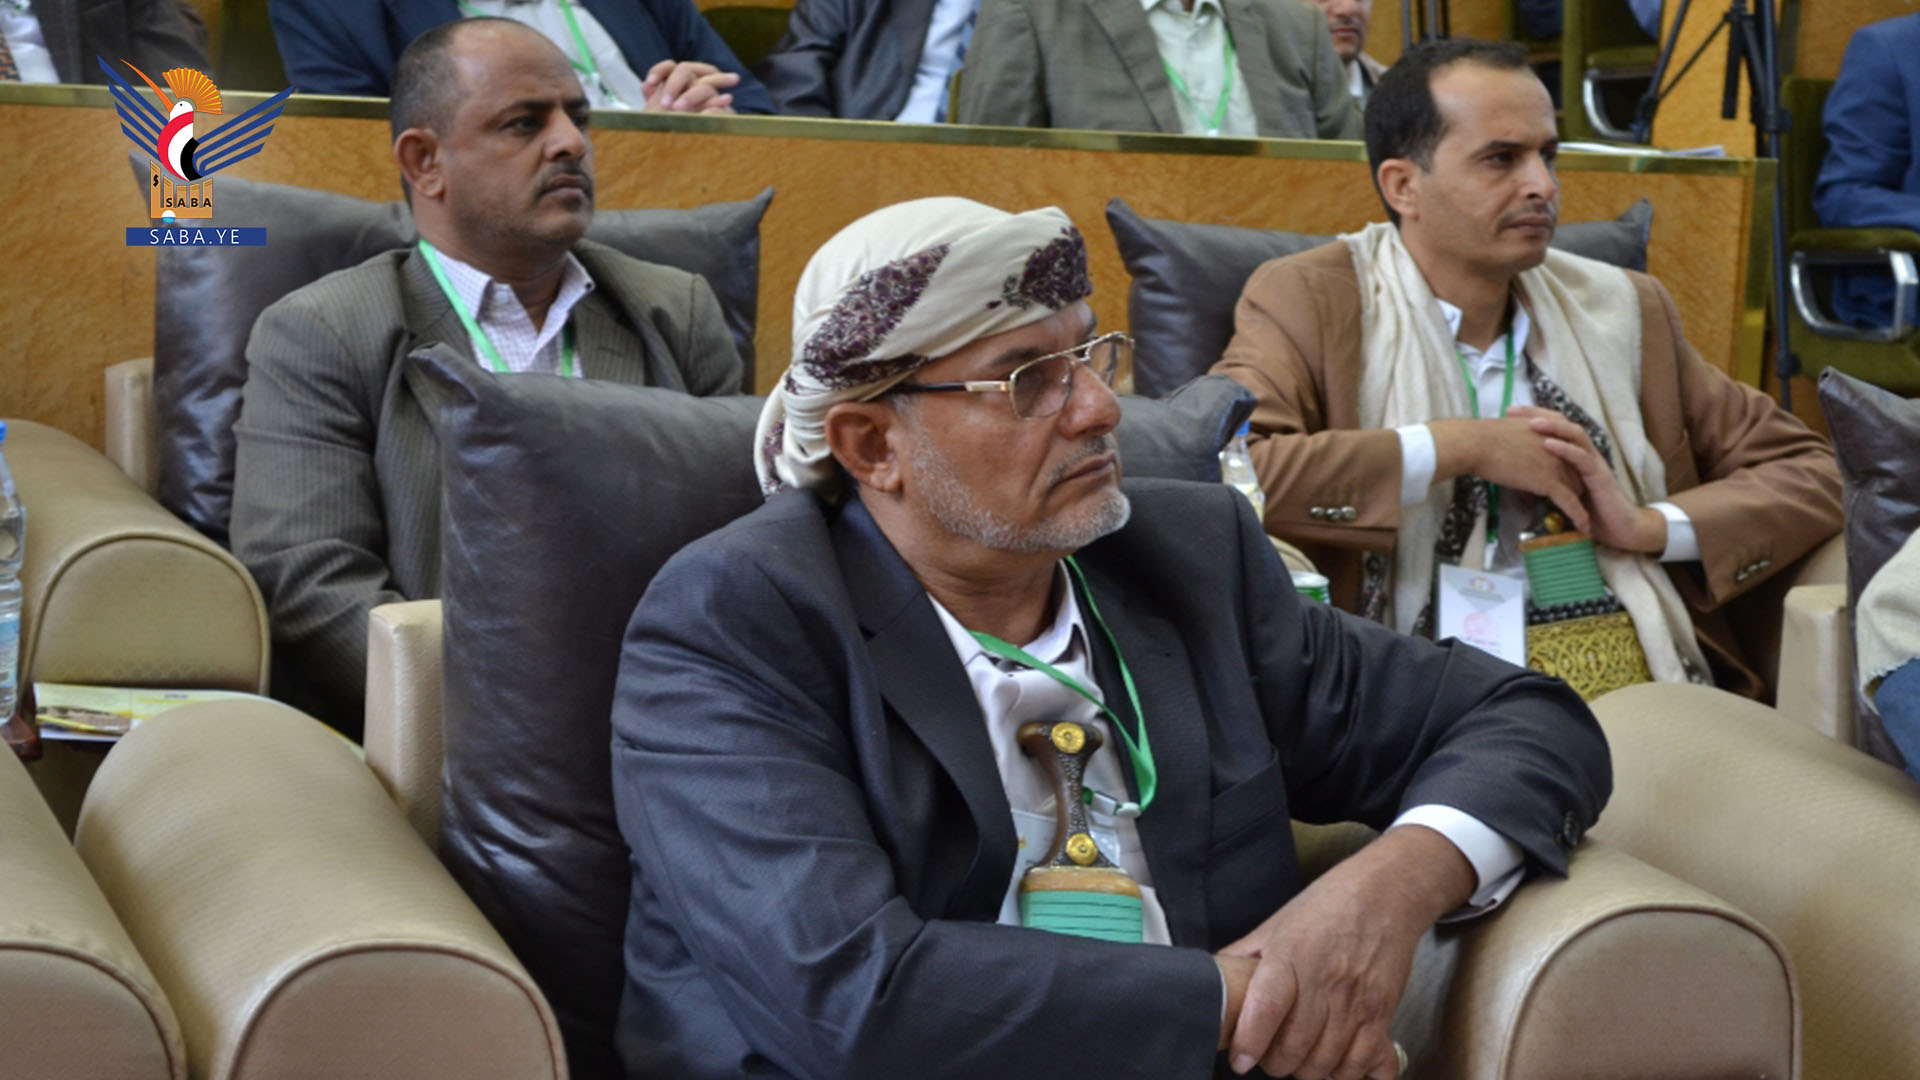 وزير التربية والتعليم يحيى بدرالدين الحوثي يدشن المؤتمر الوطني الأول لتطوير المناهج وتنويع مسارات التعليم